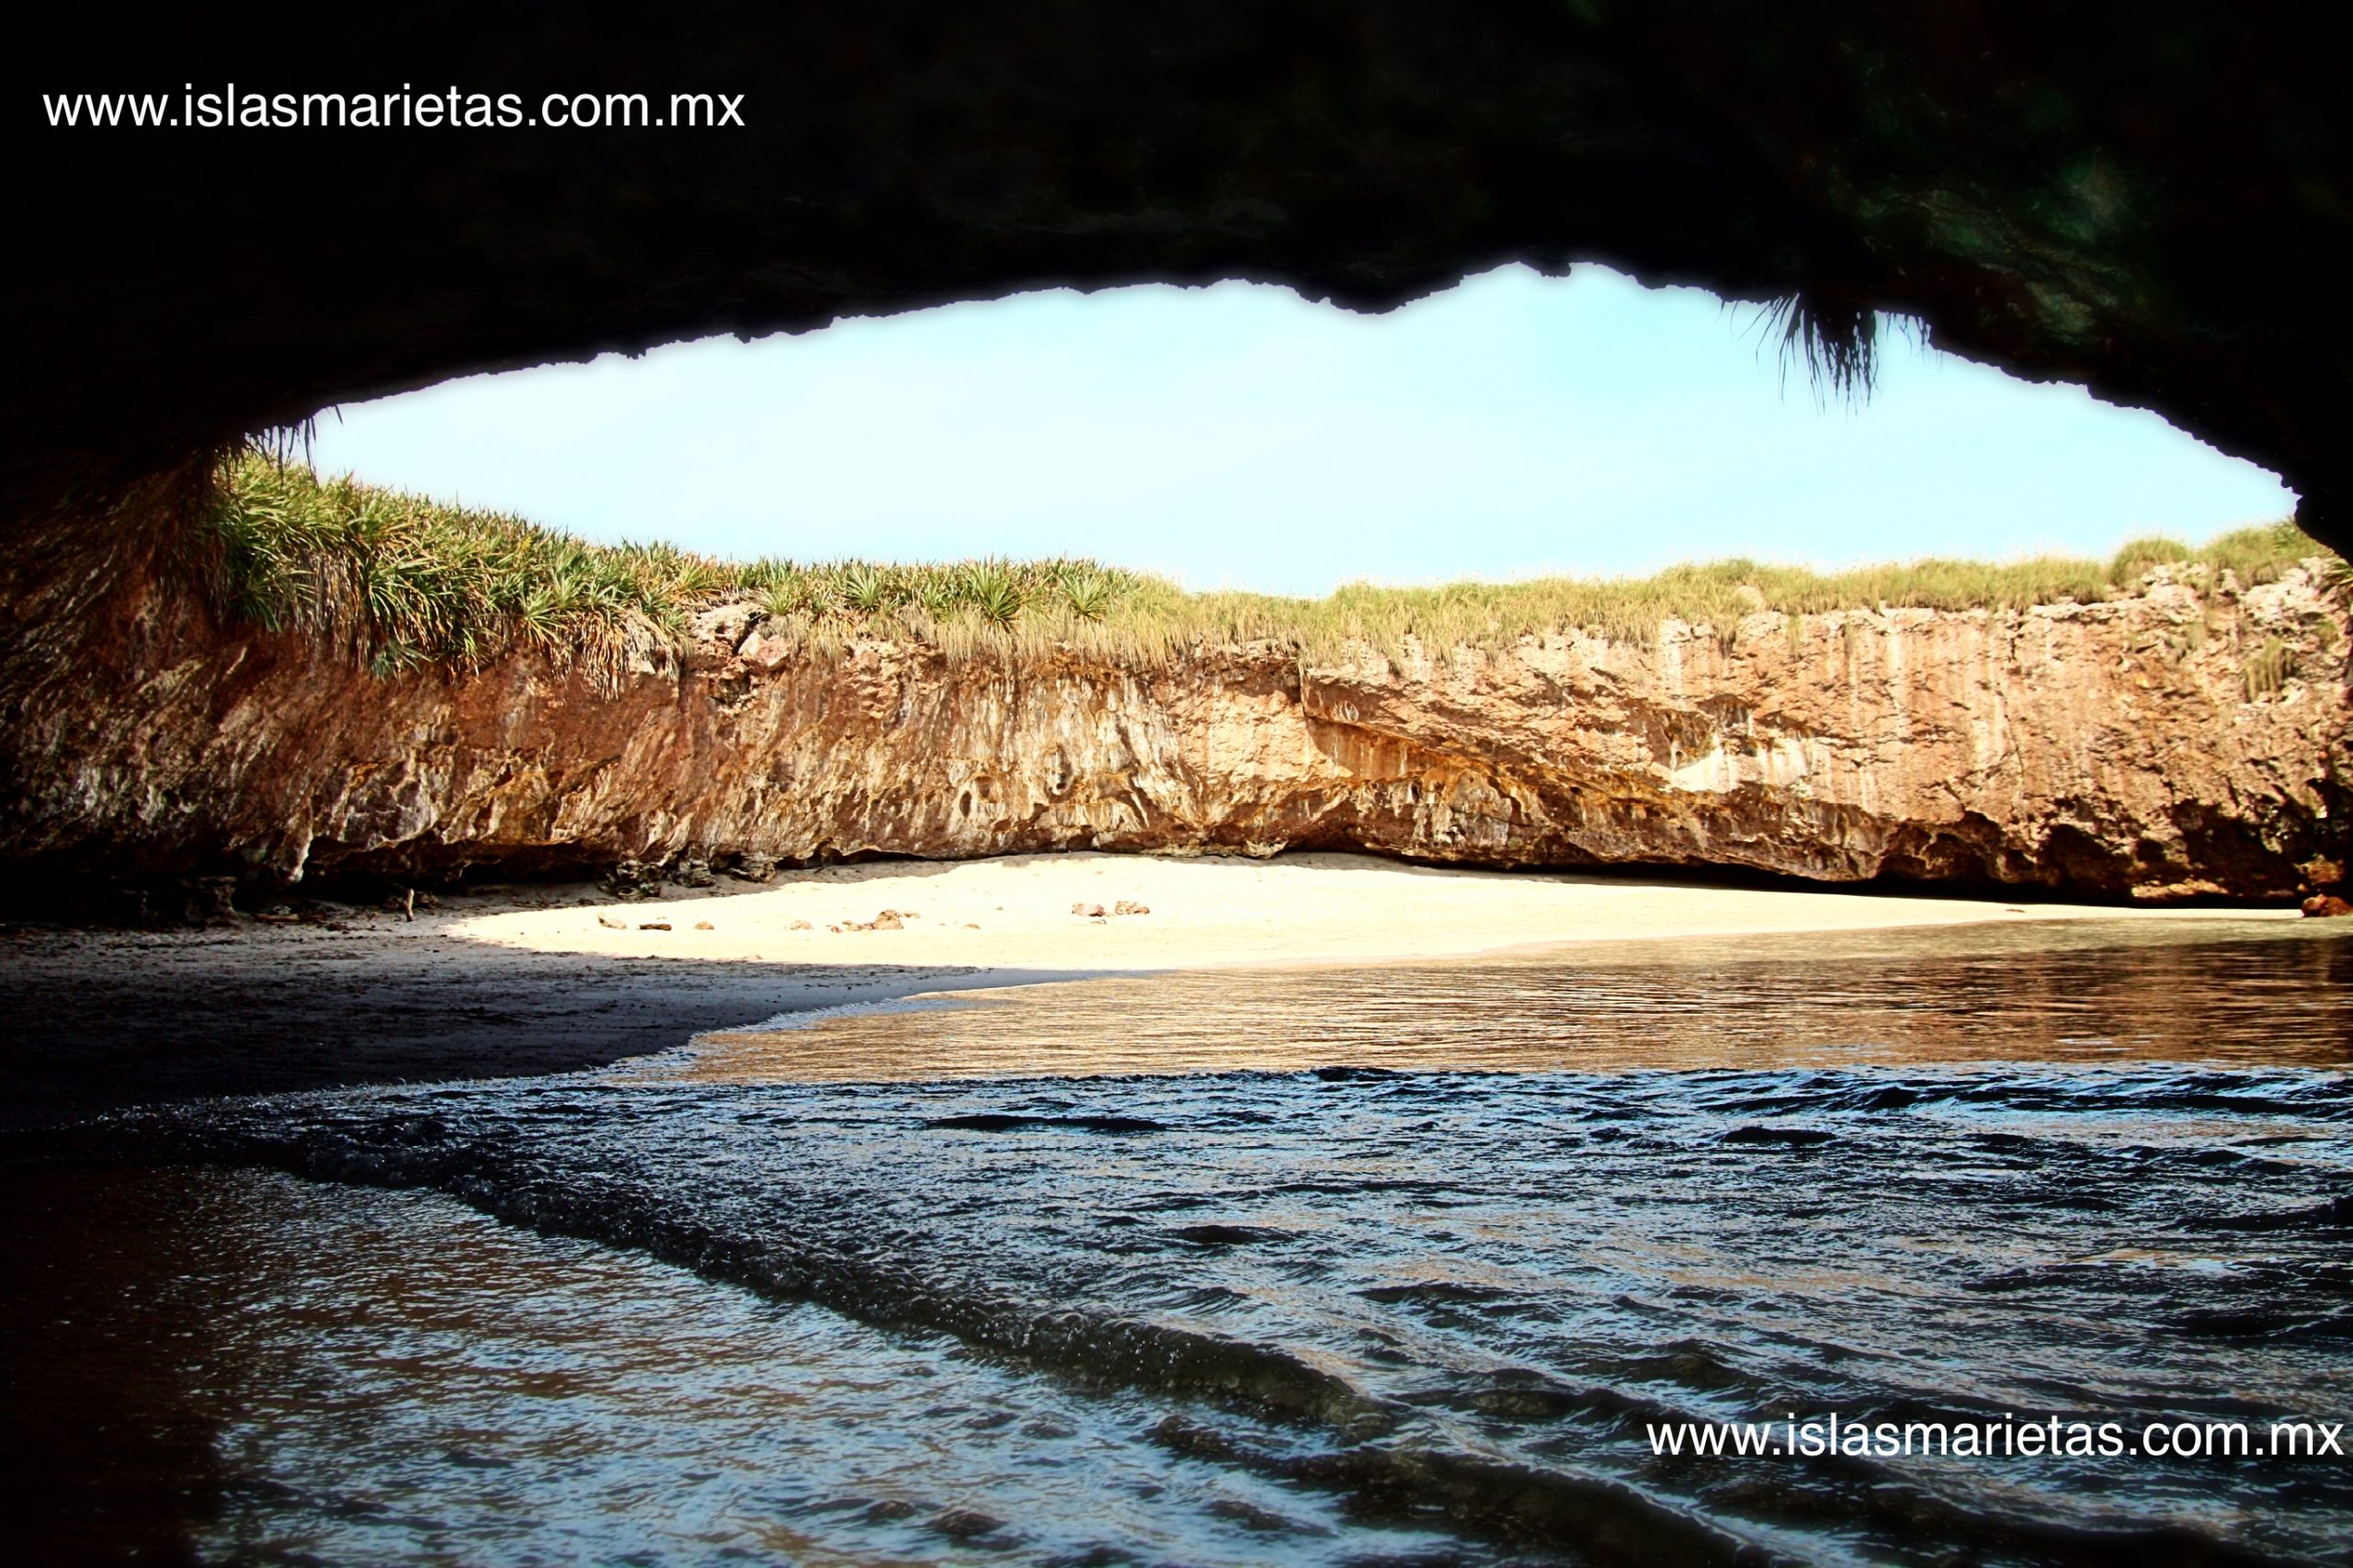 Пляж в Мексике под землей фото